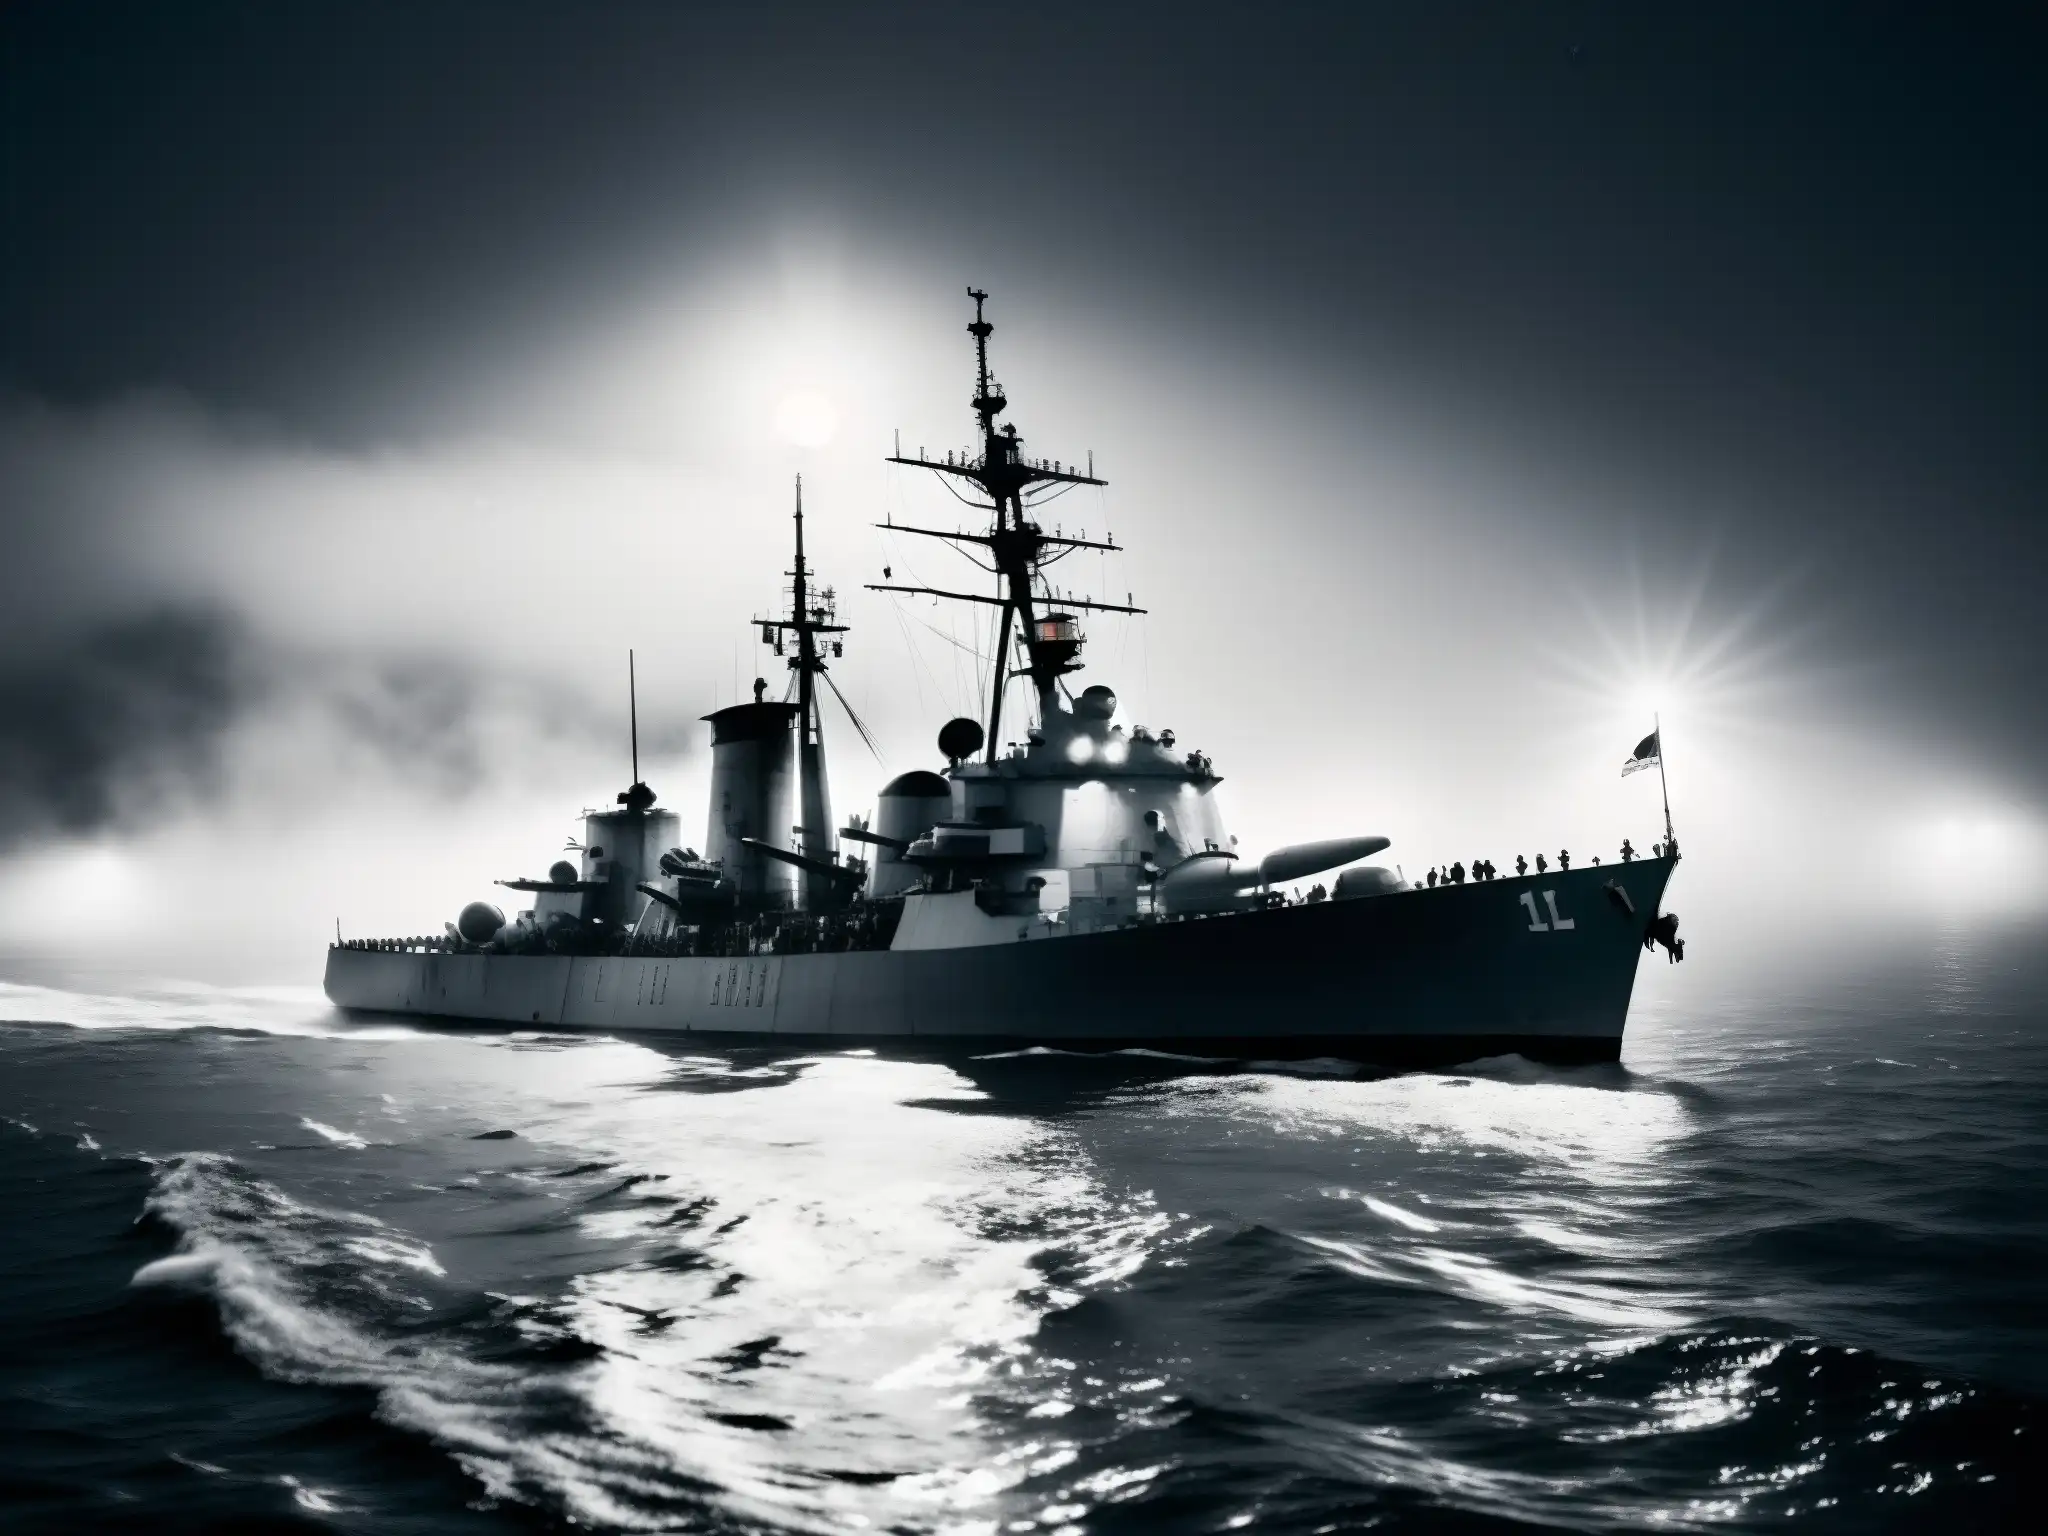 Imagen en blanco y negro del USS Eldridge envuelto en espeso neblina con un misterioso resplandor en su casco, evocando la atmósfera enigmática del Experimento Filadelfia teletransportación naval